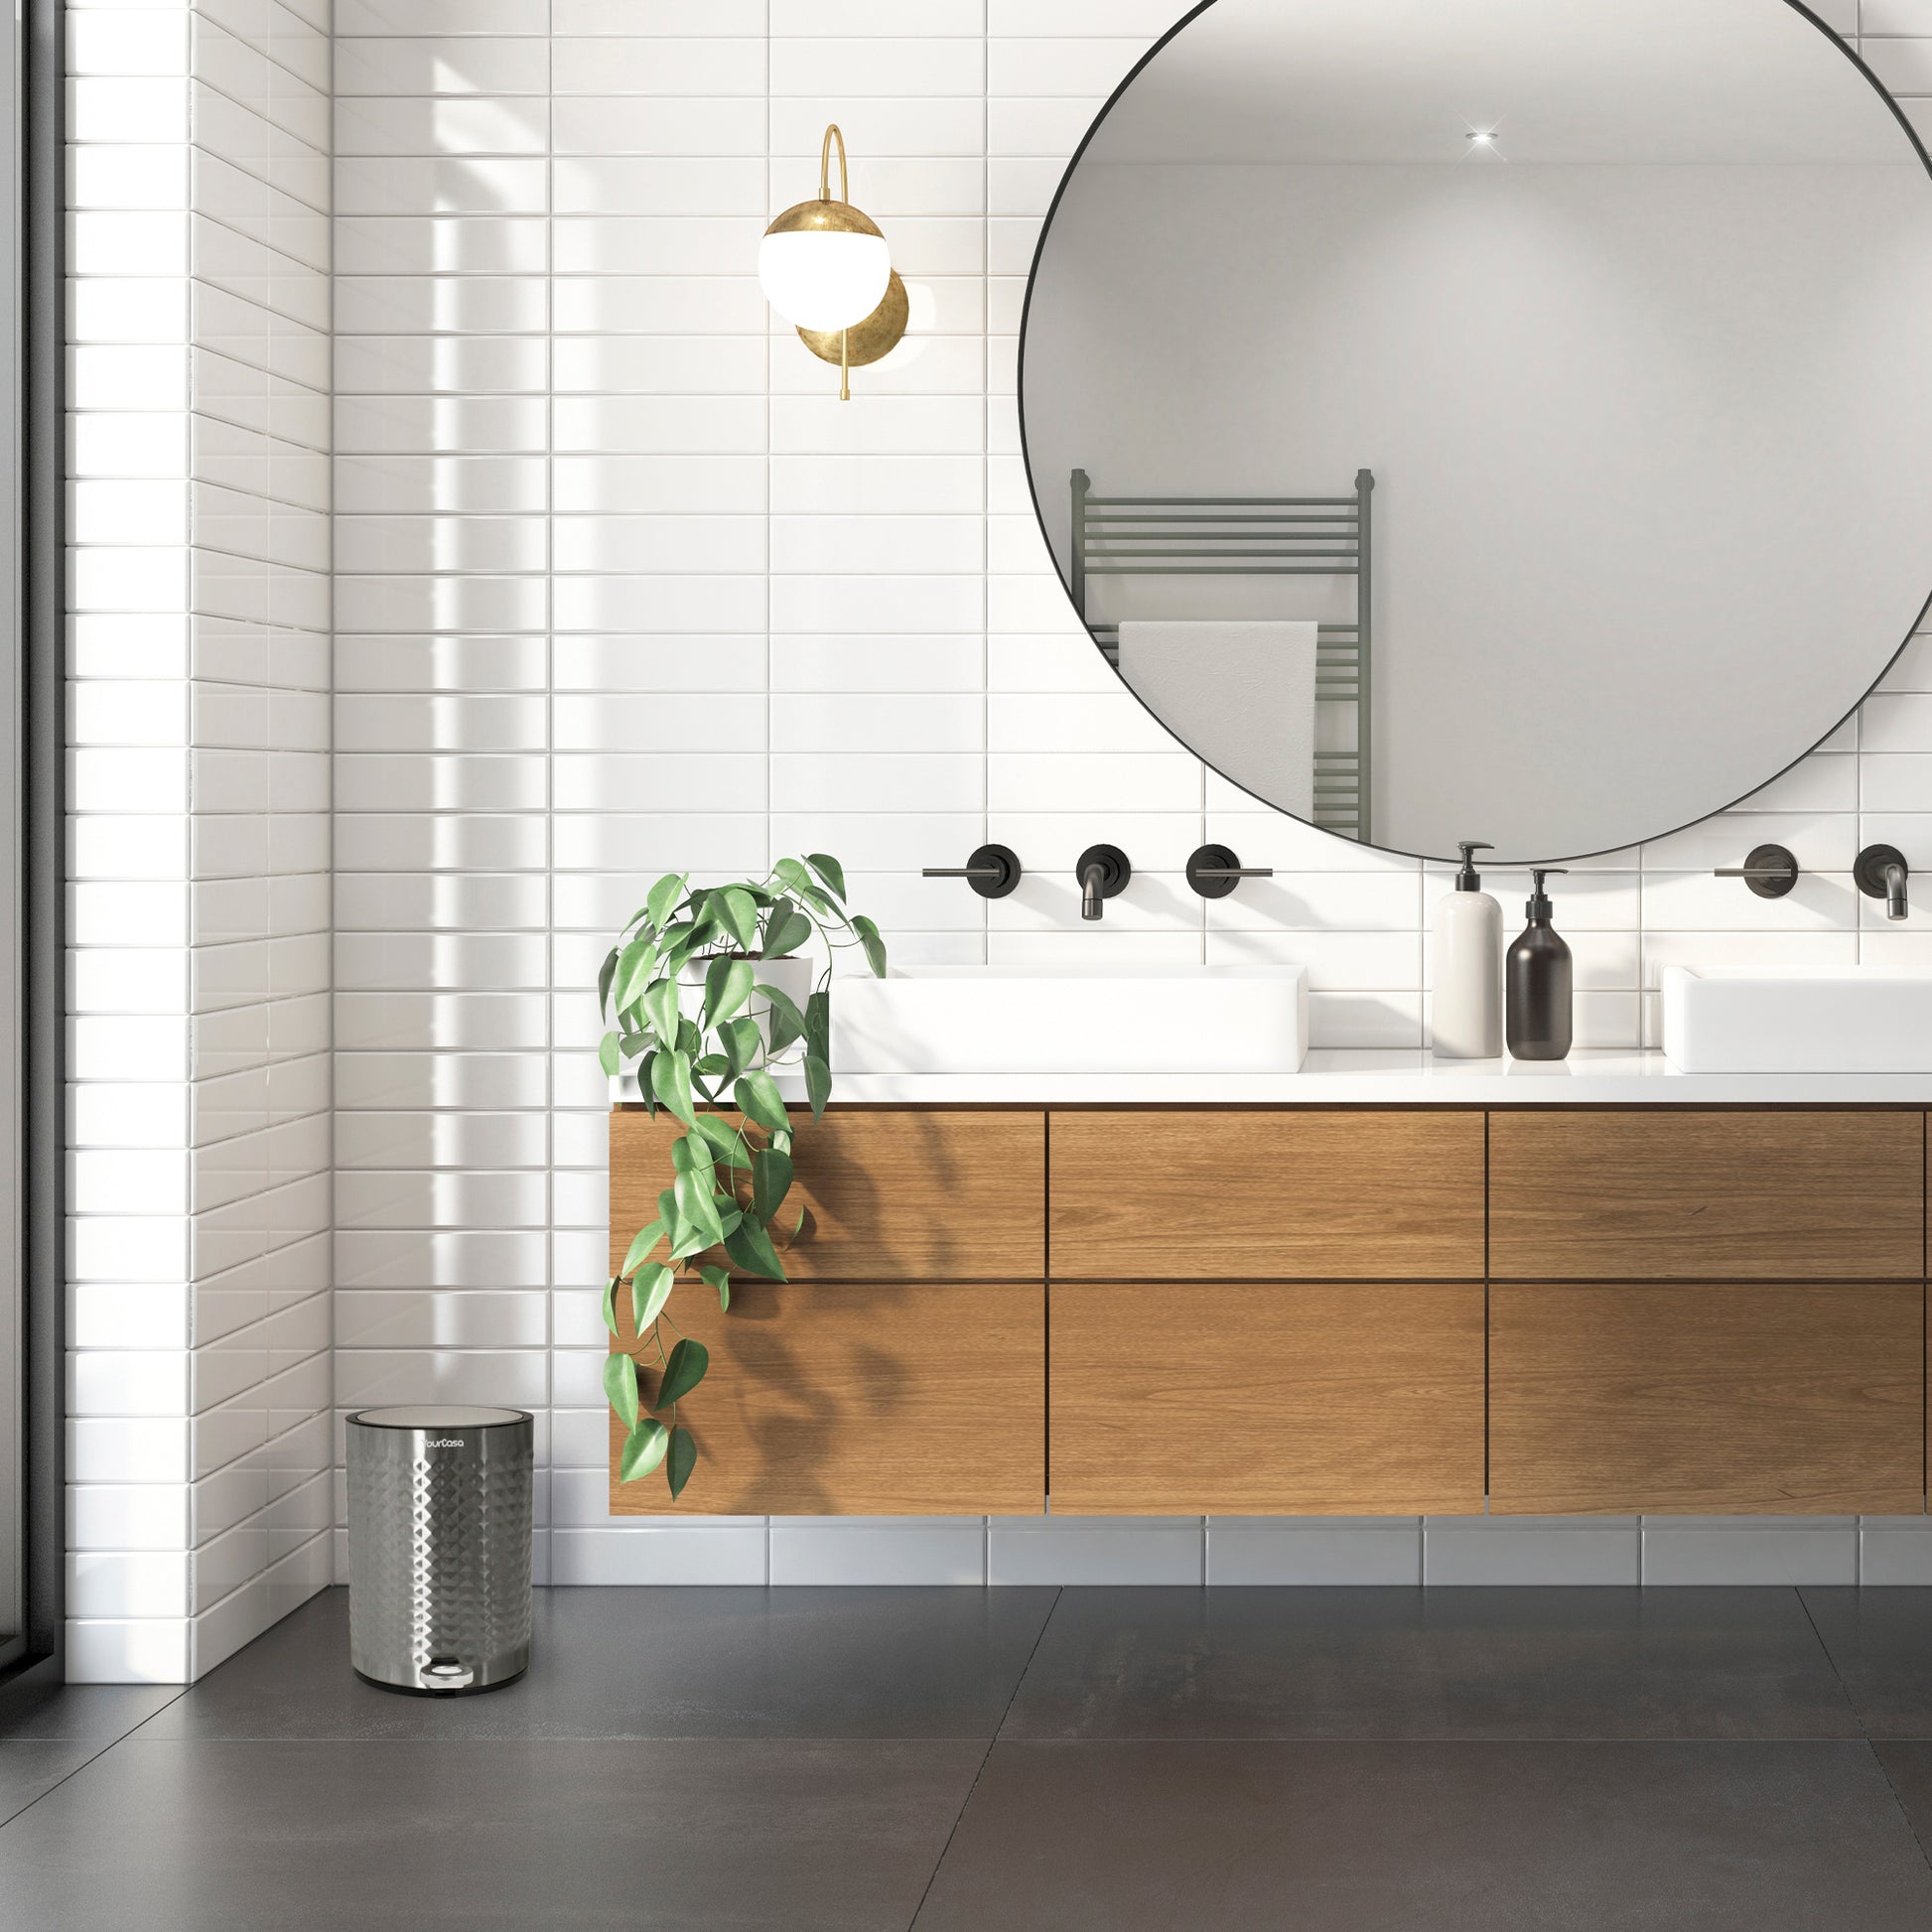 Ein modernes Badezimmer mit einem großen runden Spiegel, einem Waschtisch aus Holz, einer grünen Pflanze und einem YourCasa® Edelstahl-Mülleimer Bad 5L – Pyramiden-Oberflächenstruktur.